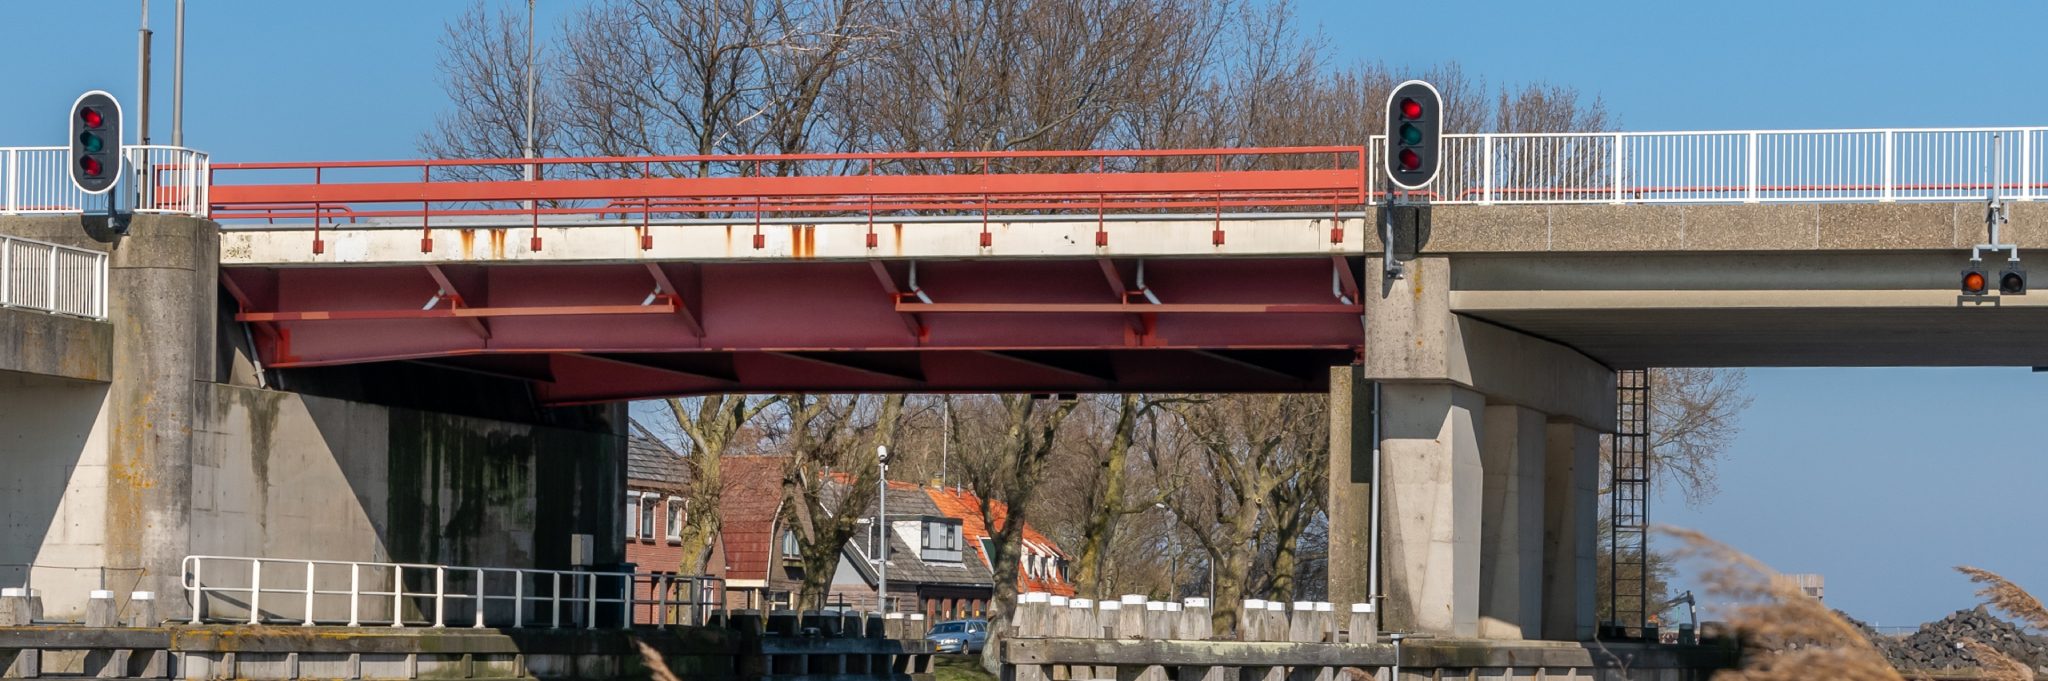 Schepen hoger dan 8,3 meter kunnen niet onder de brug doorvaren.